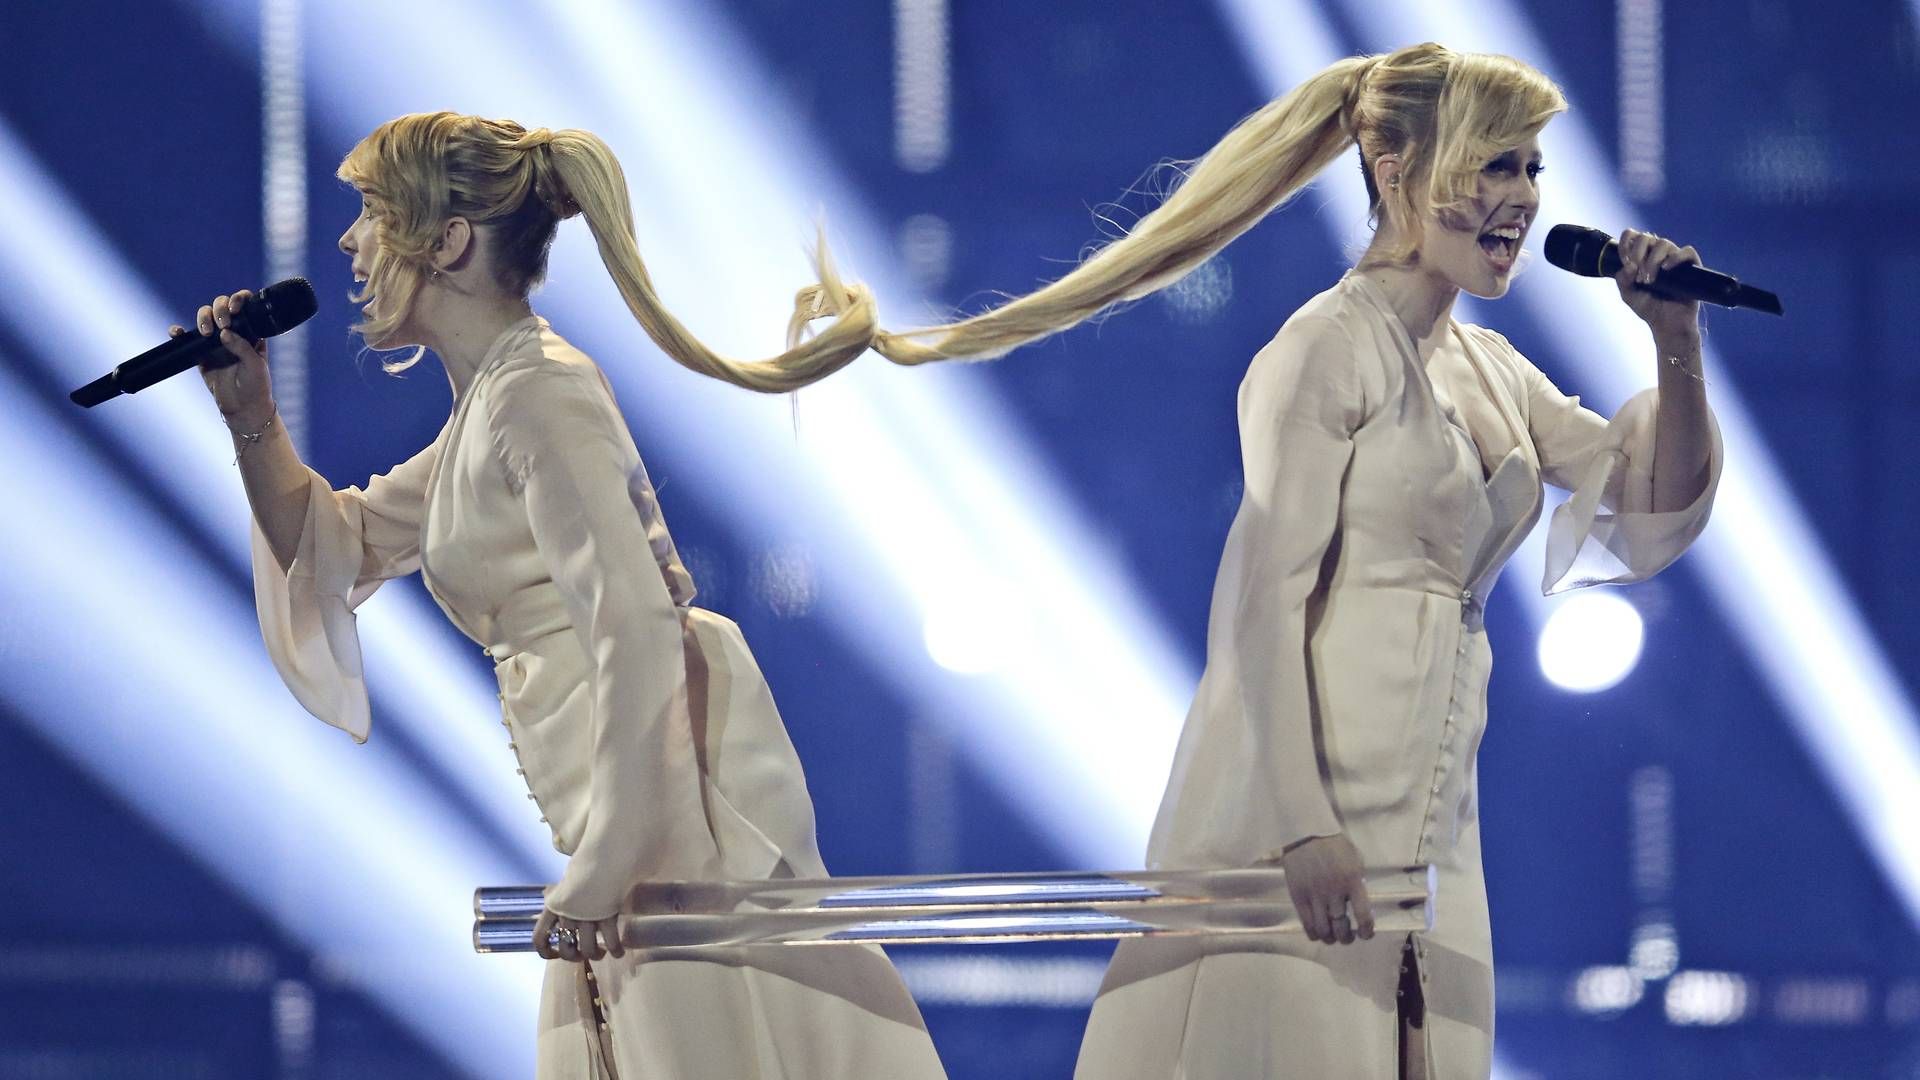 De russiske Eurovision-deltagere i 2014, Tolmachevy-tvillingerne. | Foto: Jens Dresling